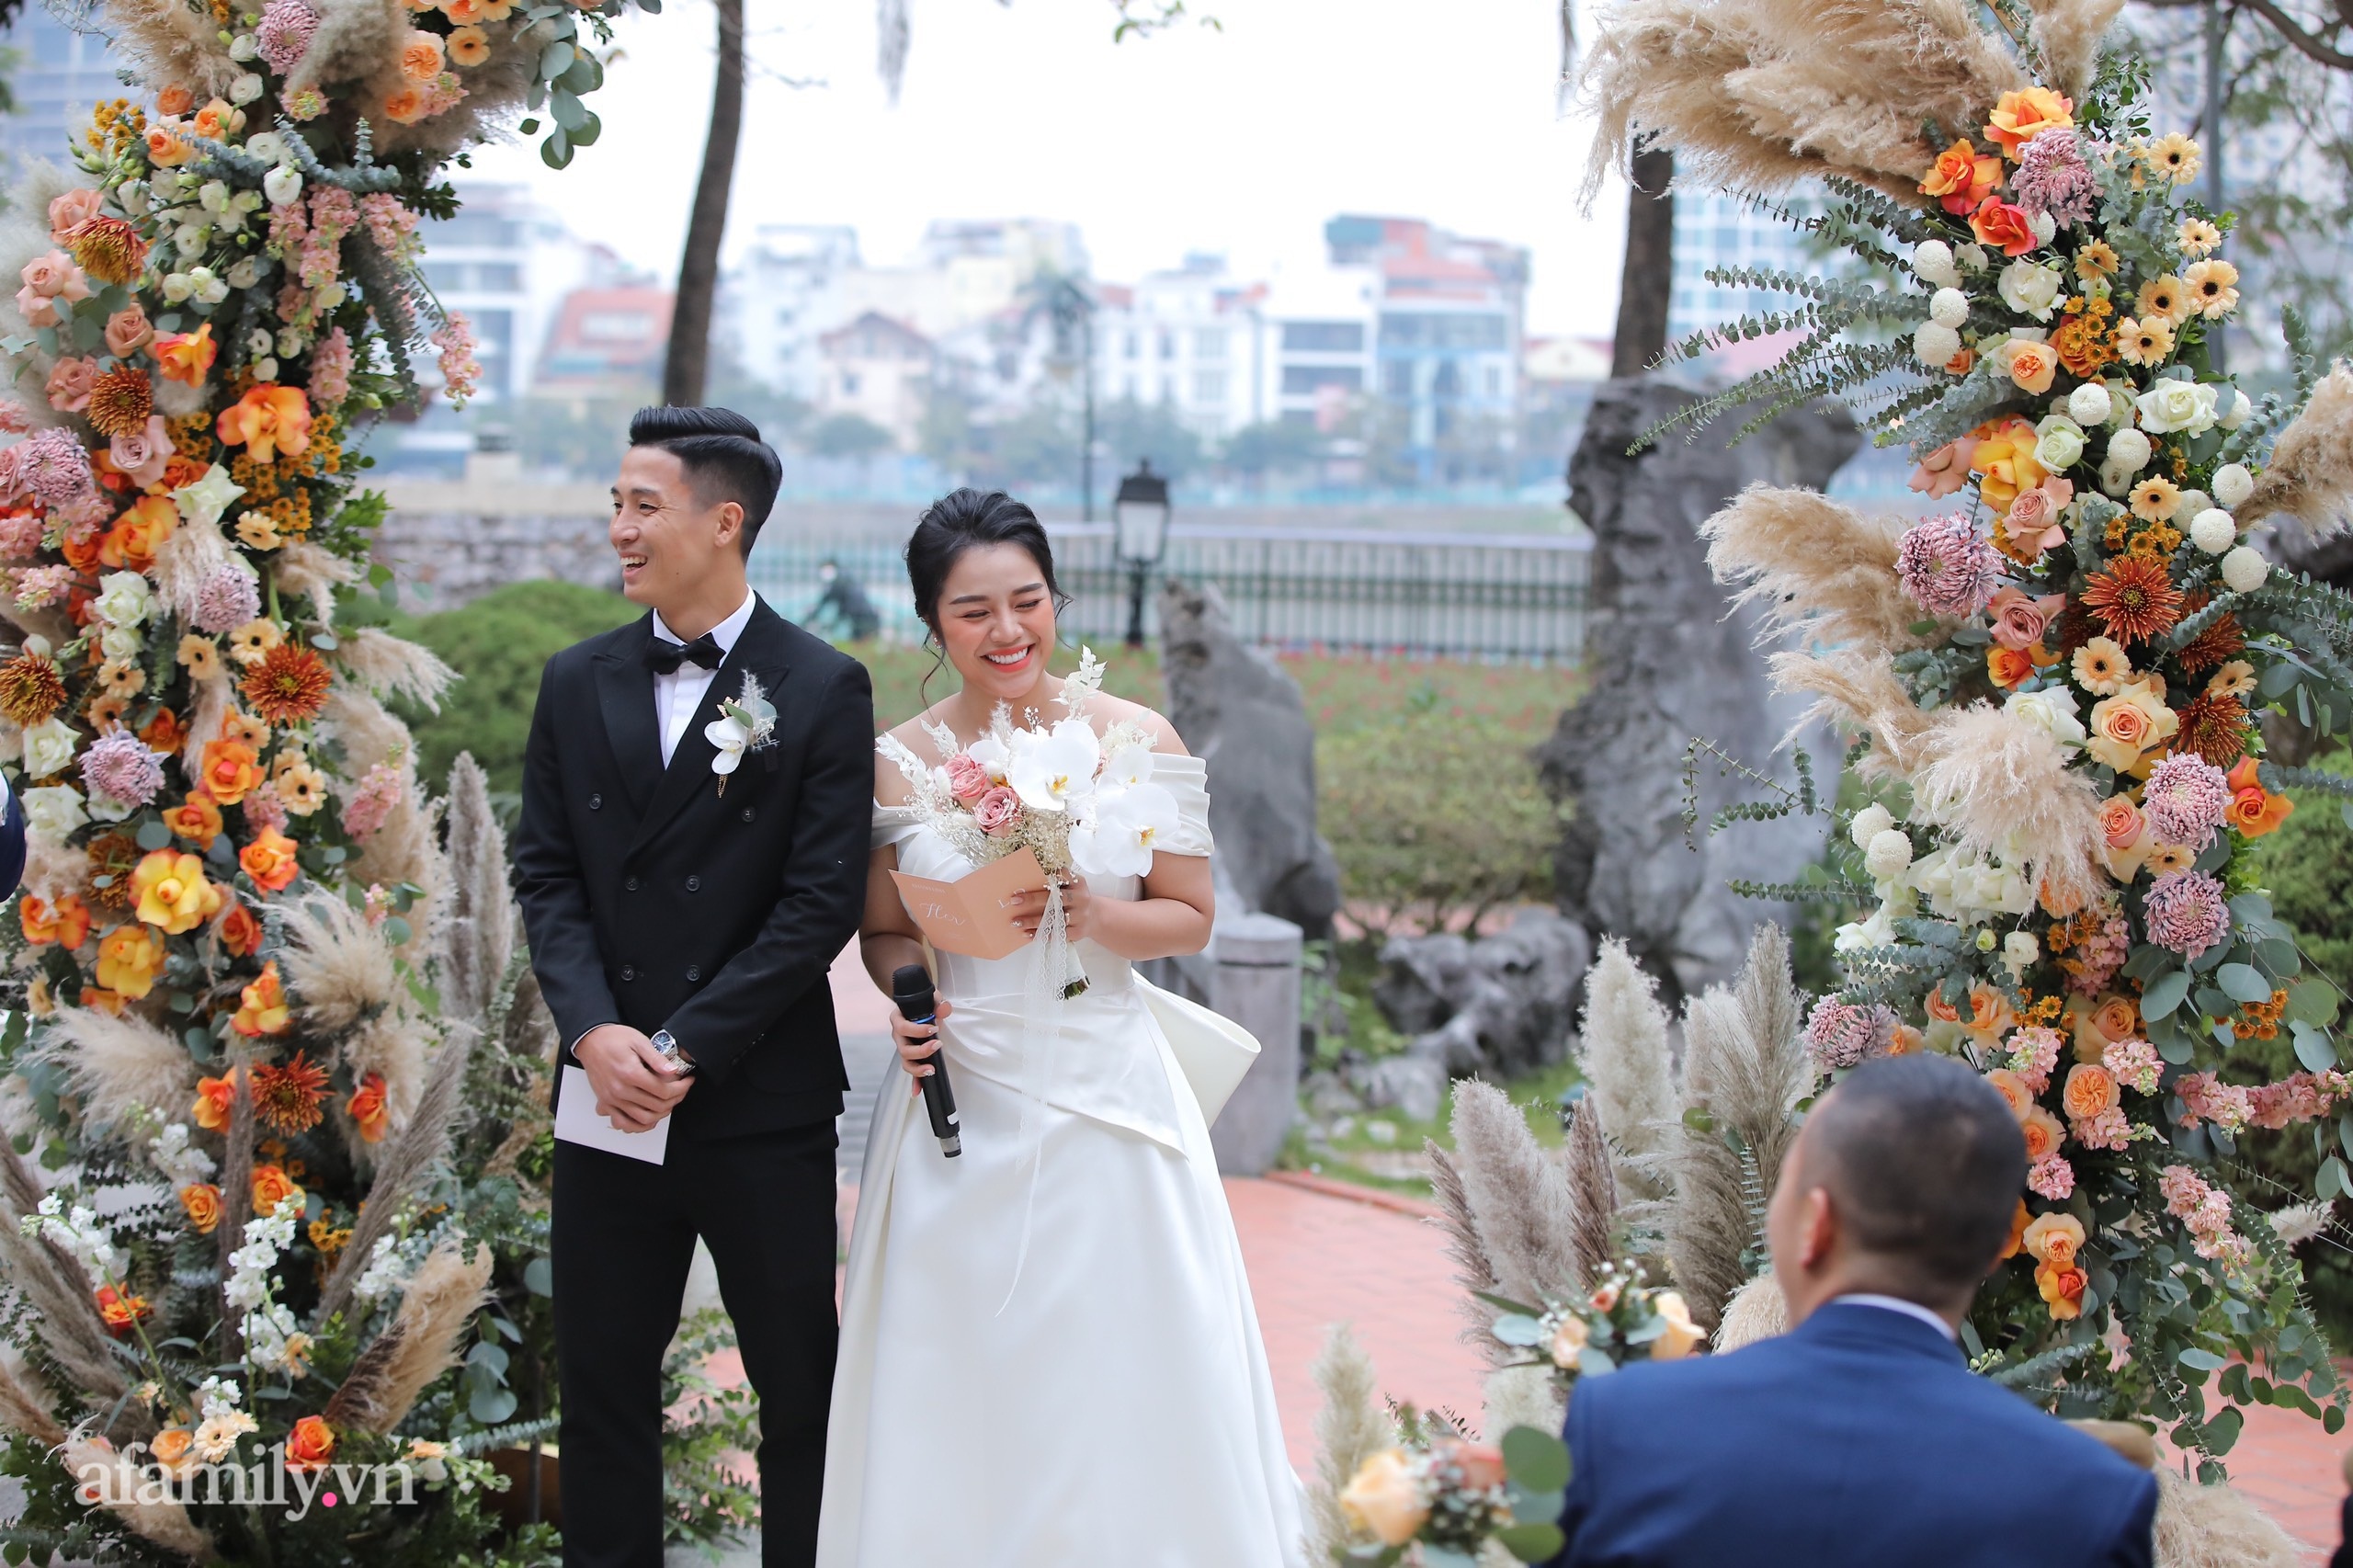 Bùi Tiến Dũng - Khánh Linh xuất hiện ở khu vực làm lễ, cô dâu cười tươi rạng rỡ dù thời tiết Hà Nội đang rất lạnh - Ảnh 2.